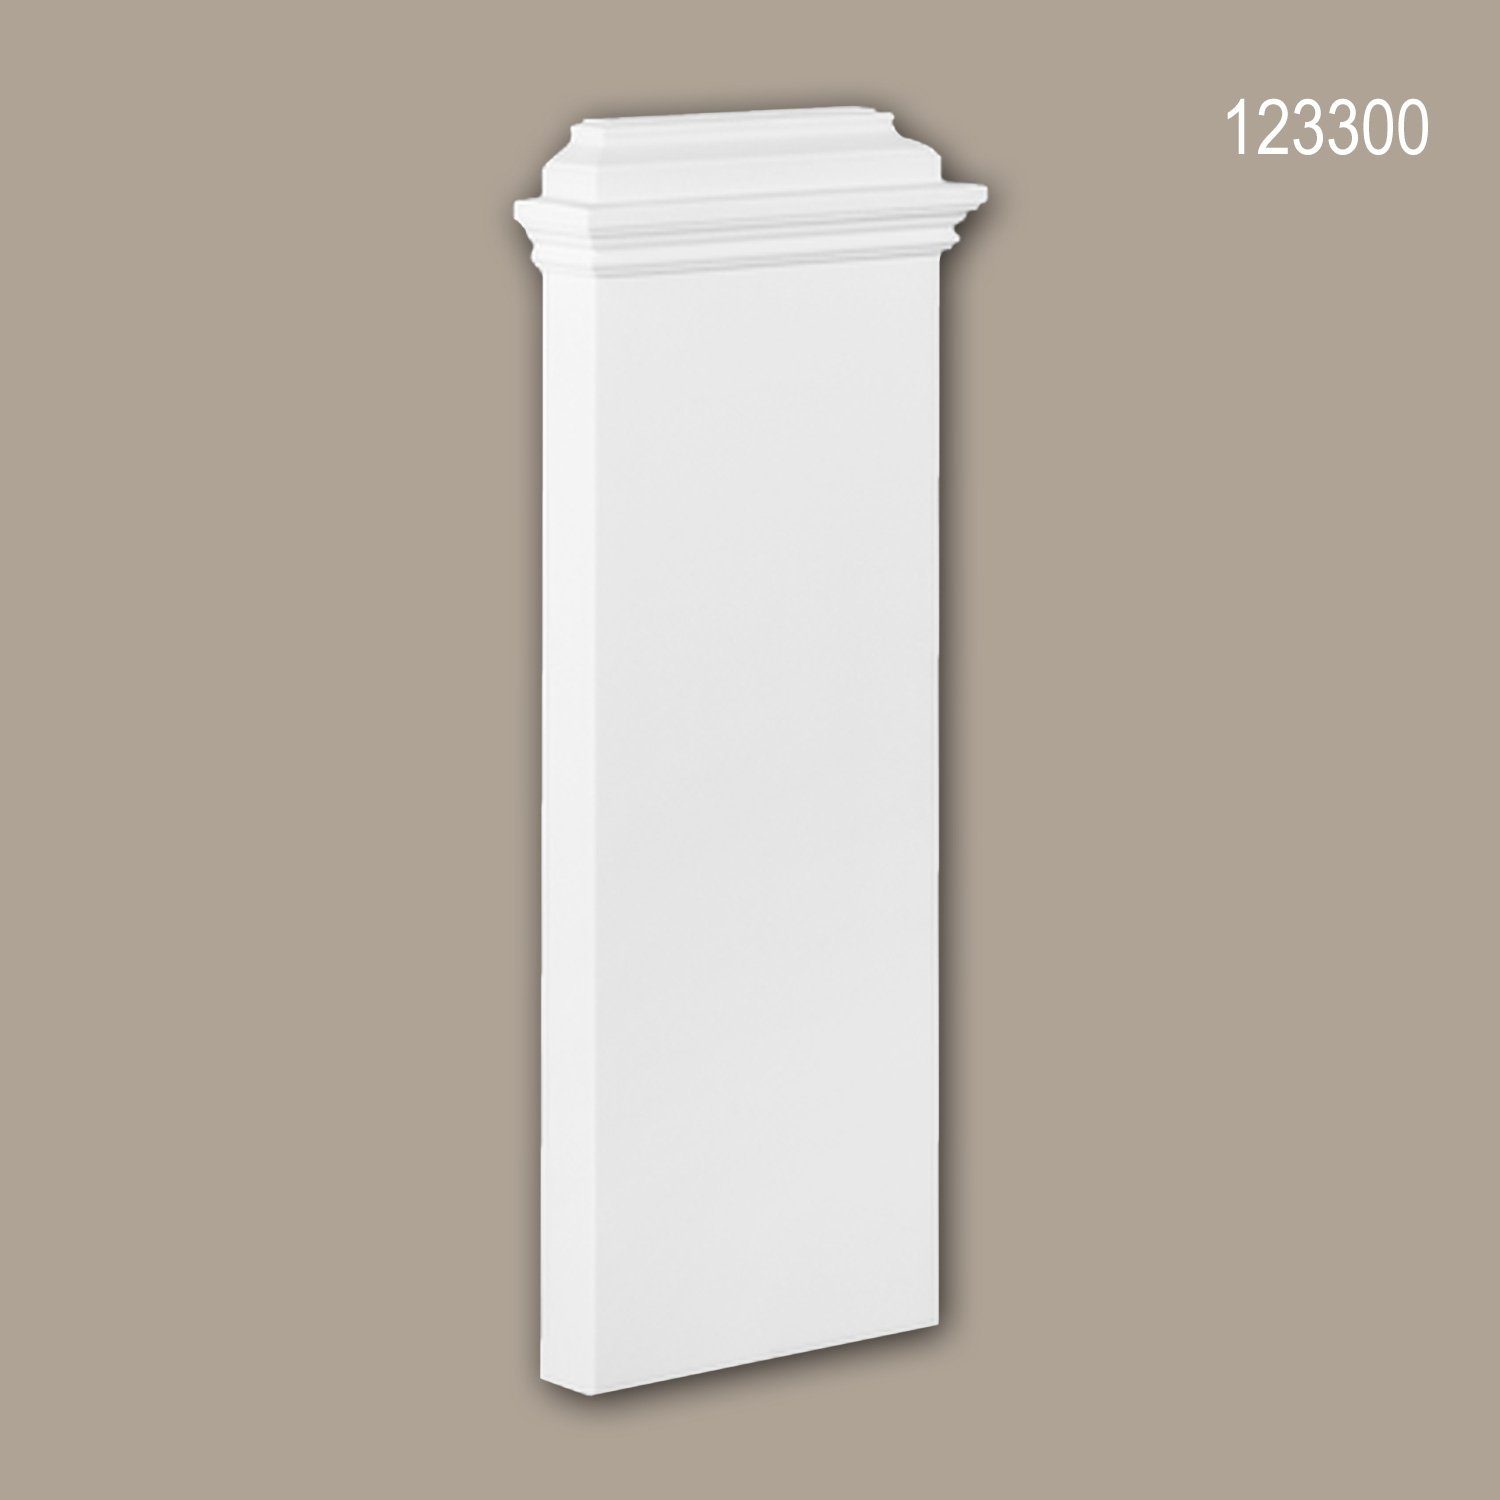 Profhome Wanddekoobjekt 123300 (Pilaster Sockel, 1 St., Pilaster, Zierelement, Wanddekor, Schmuckelement), weiß, vorgrundiert, Stil: Zeitlos / Klassisch